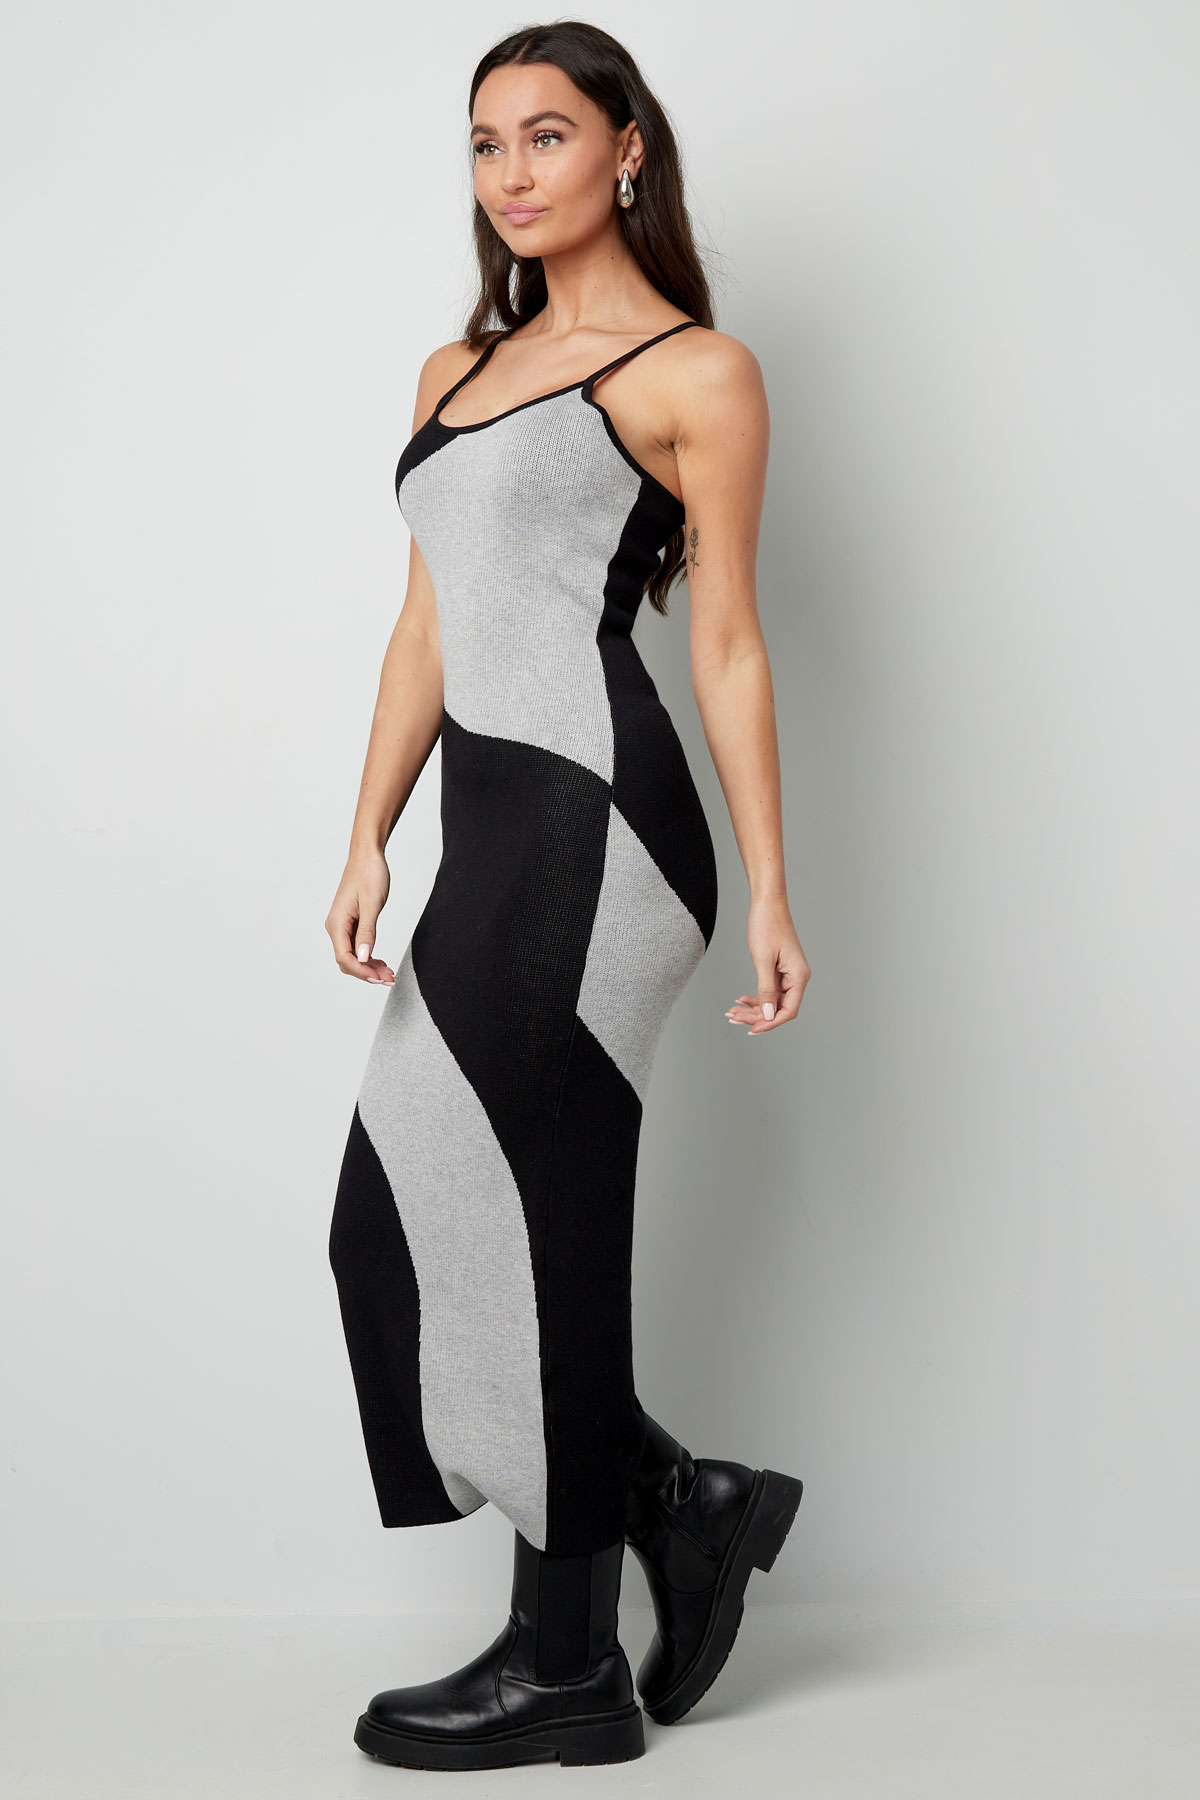 Kleid mit Bio-Print – Schwarz und Weiß Bild9